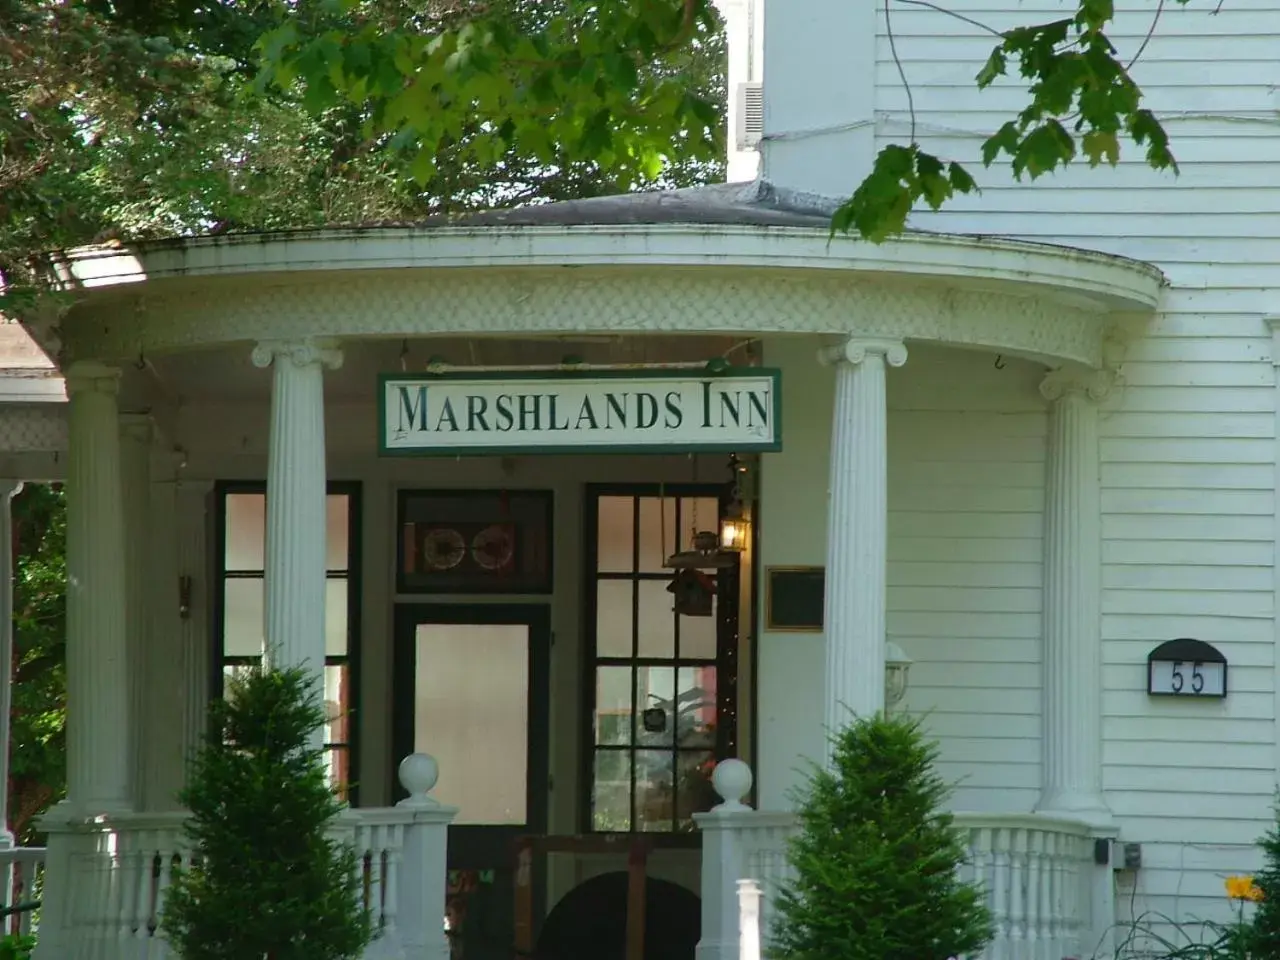 Property building in Marshlands Inn